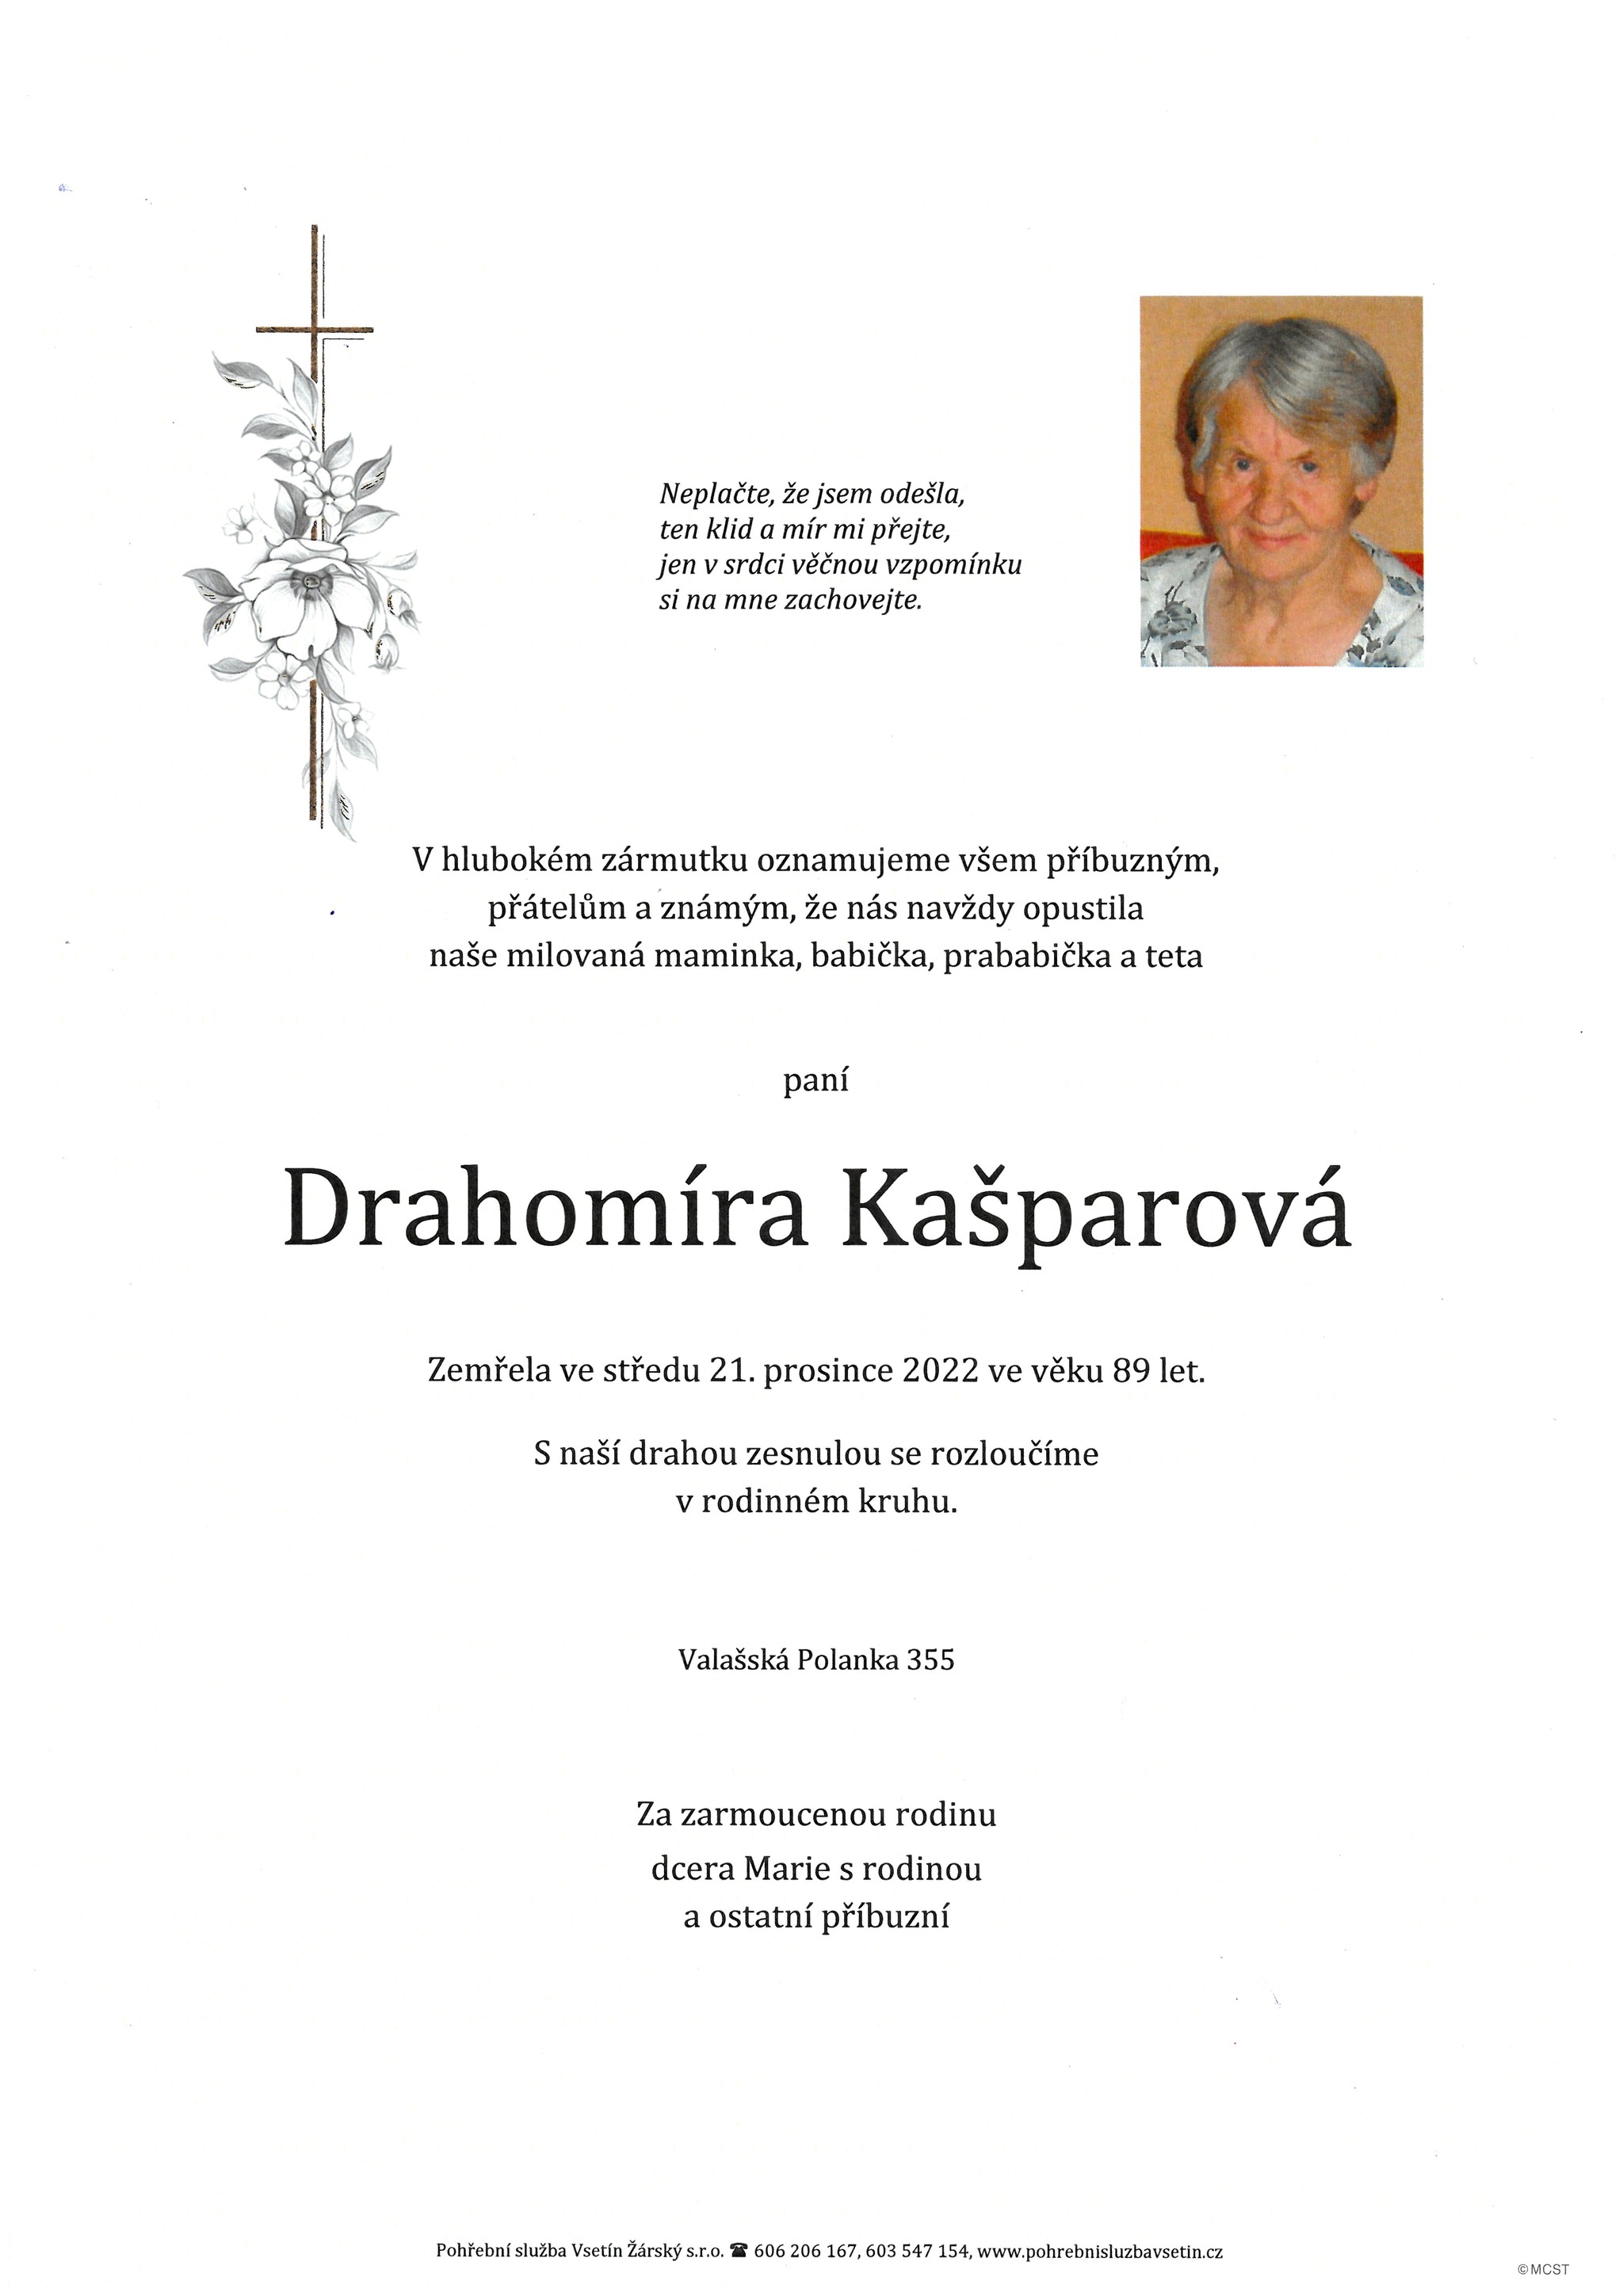 Drahomíra Kašparová